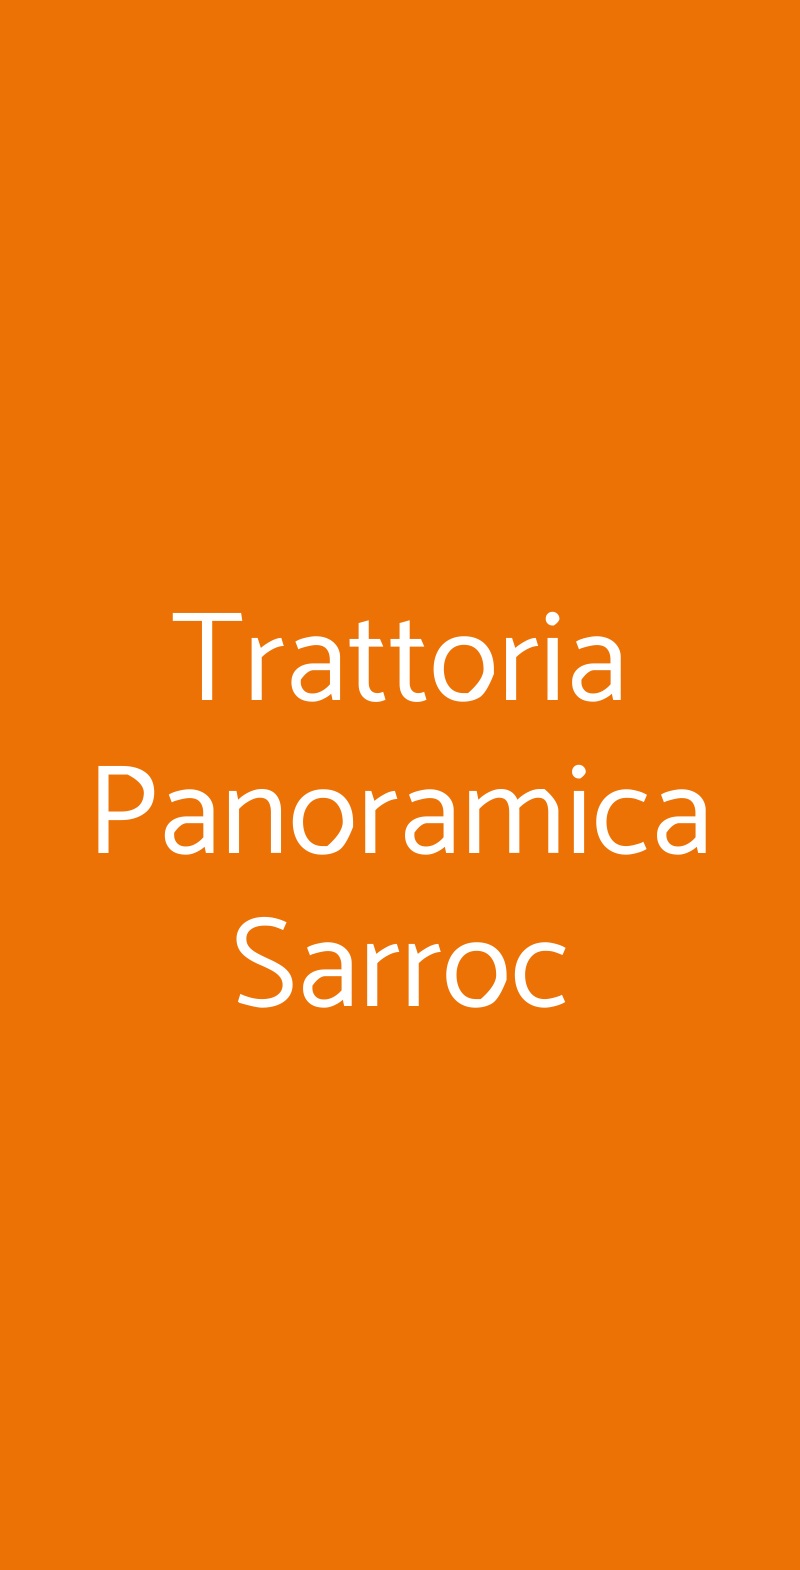 Trattoria Panoramica Sarroc Vignale Monferrato menù 1 pagina